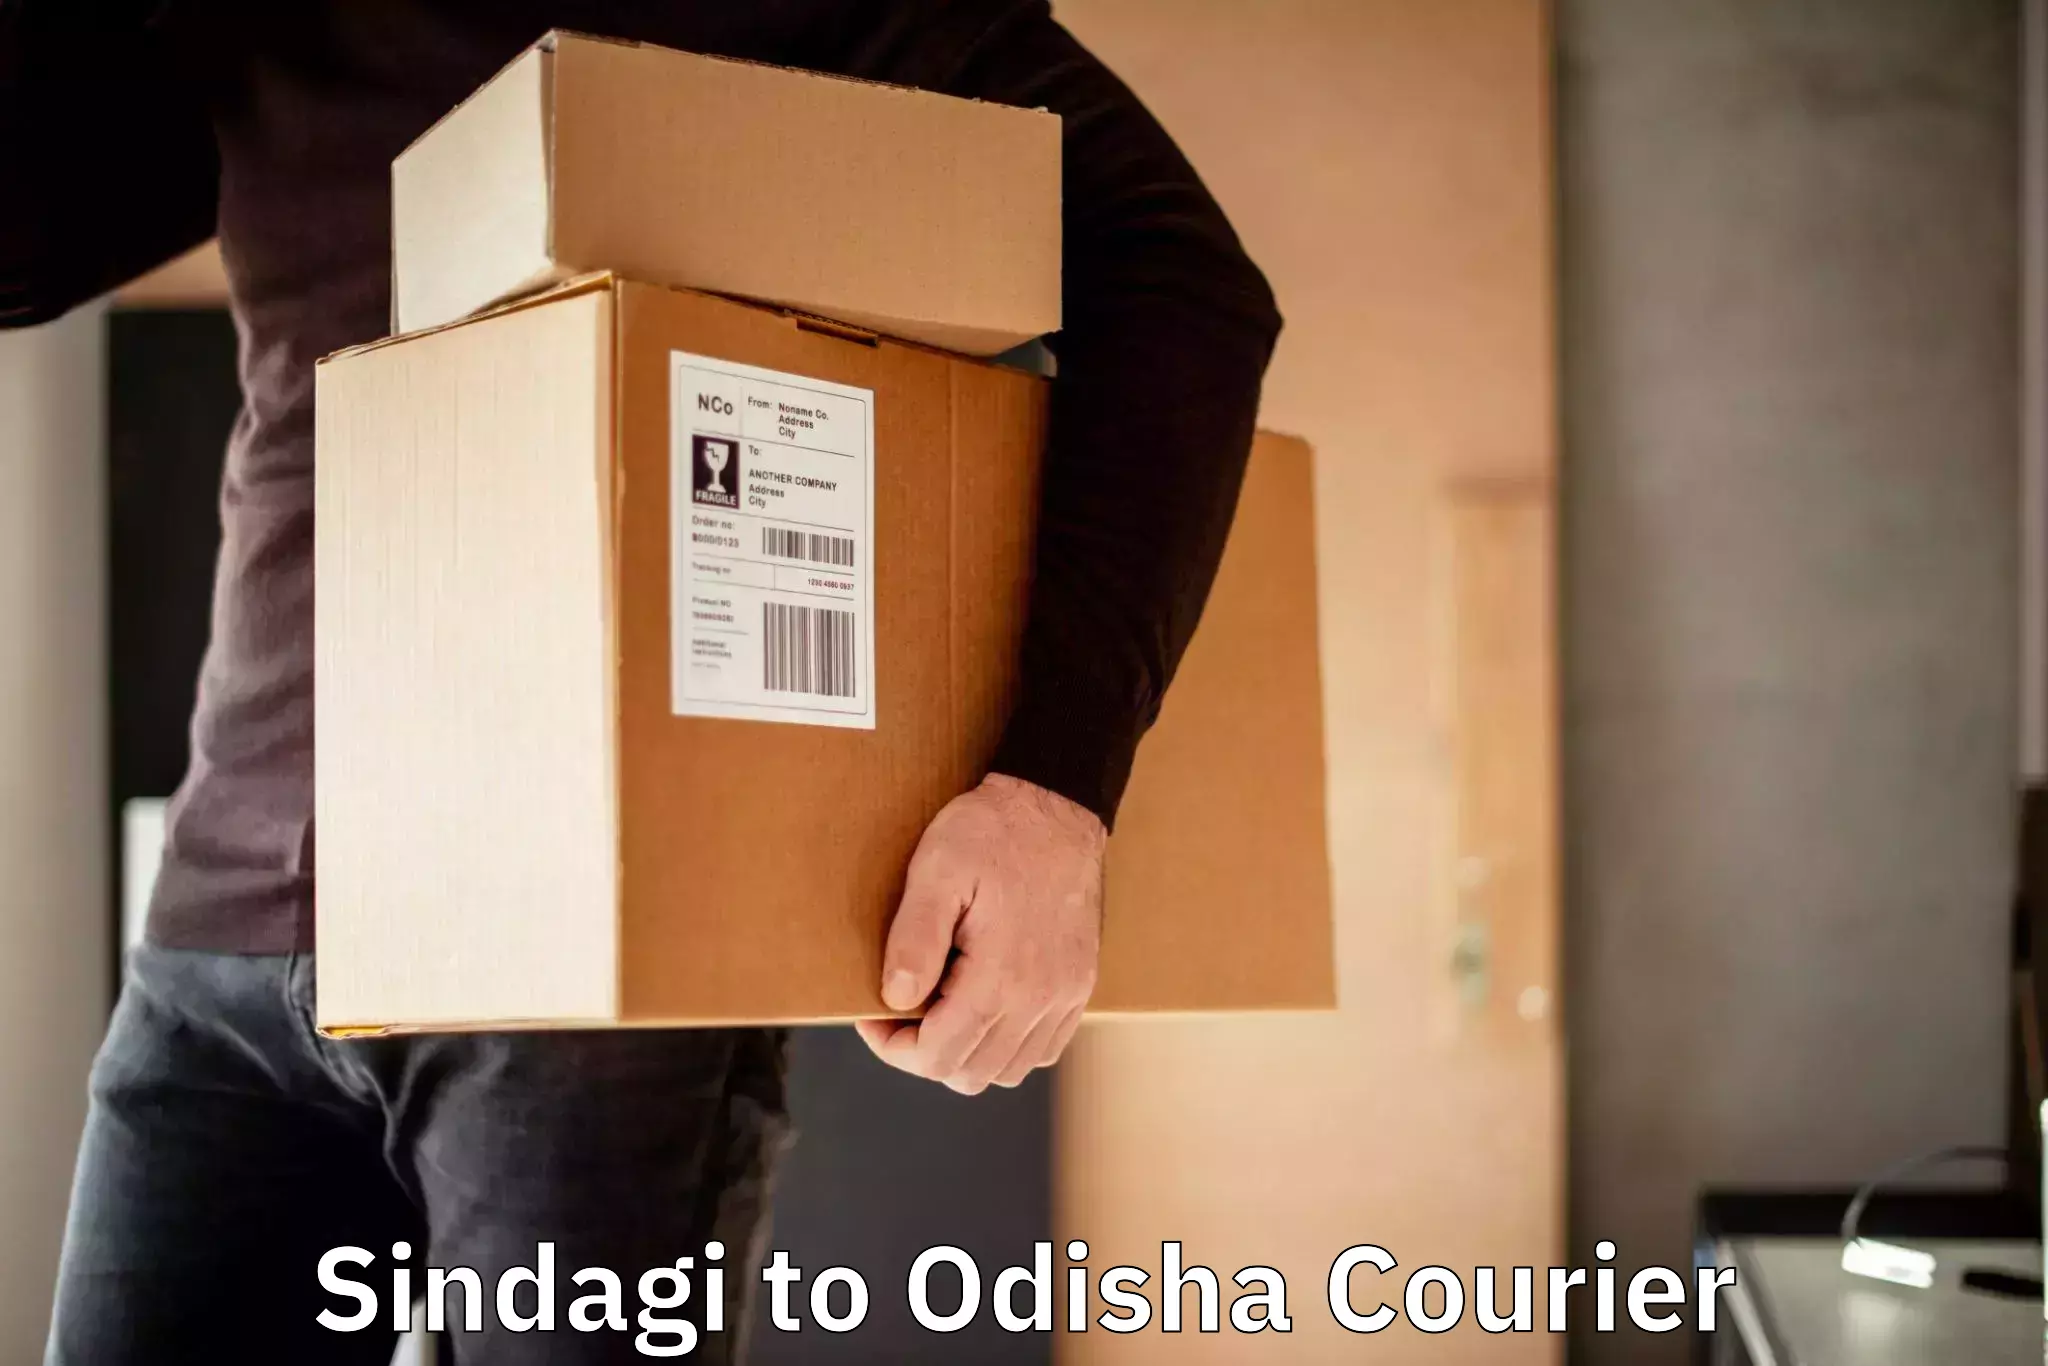 International courier networks Sindagi to Raikia